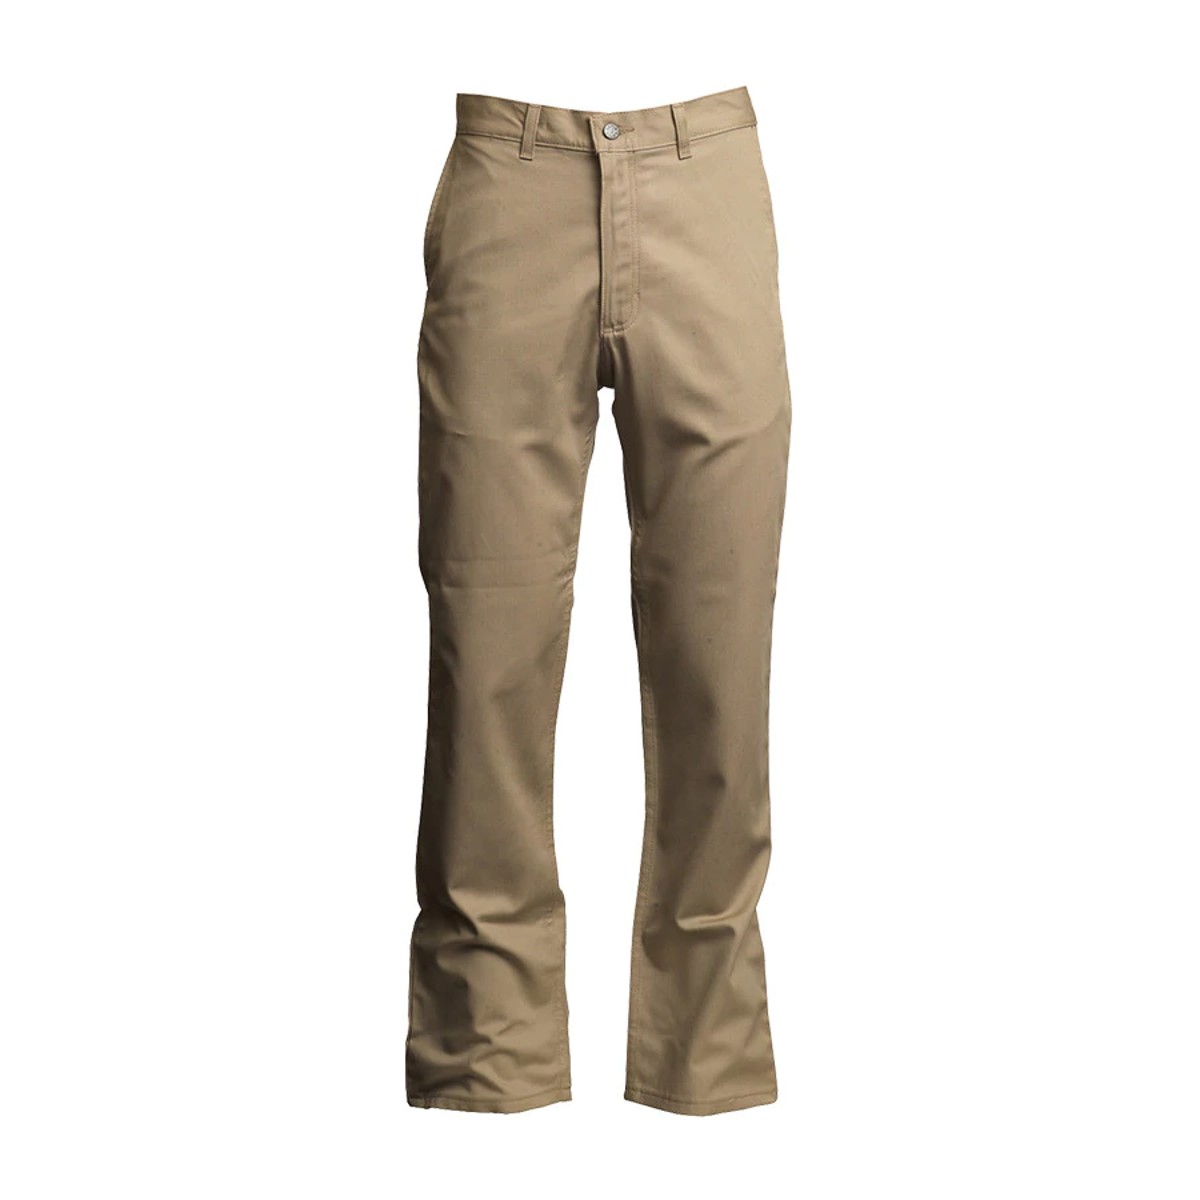 LAPCO FR Uniform Pants in Westex UltraSoft in Khaki